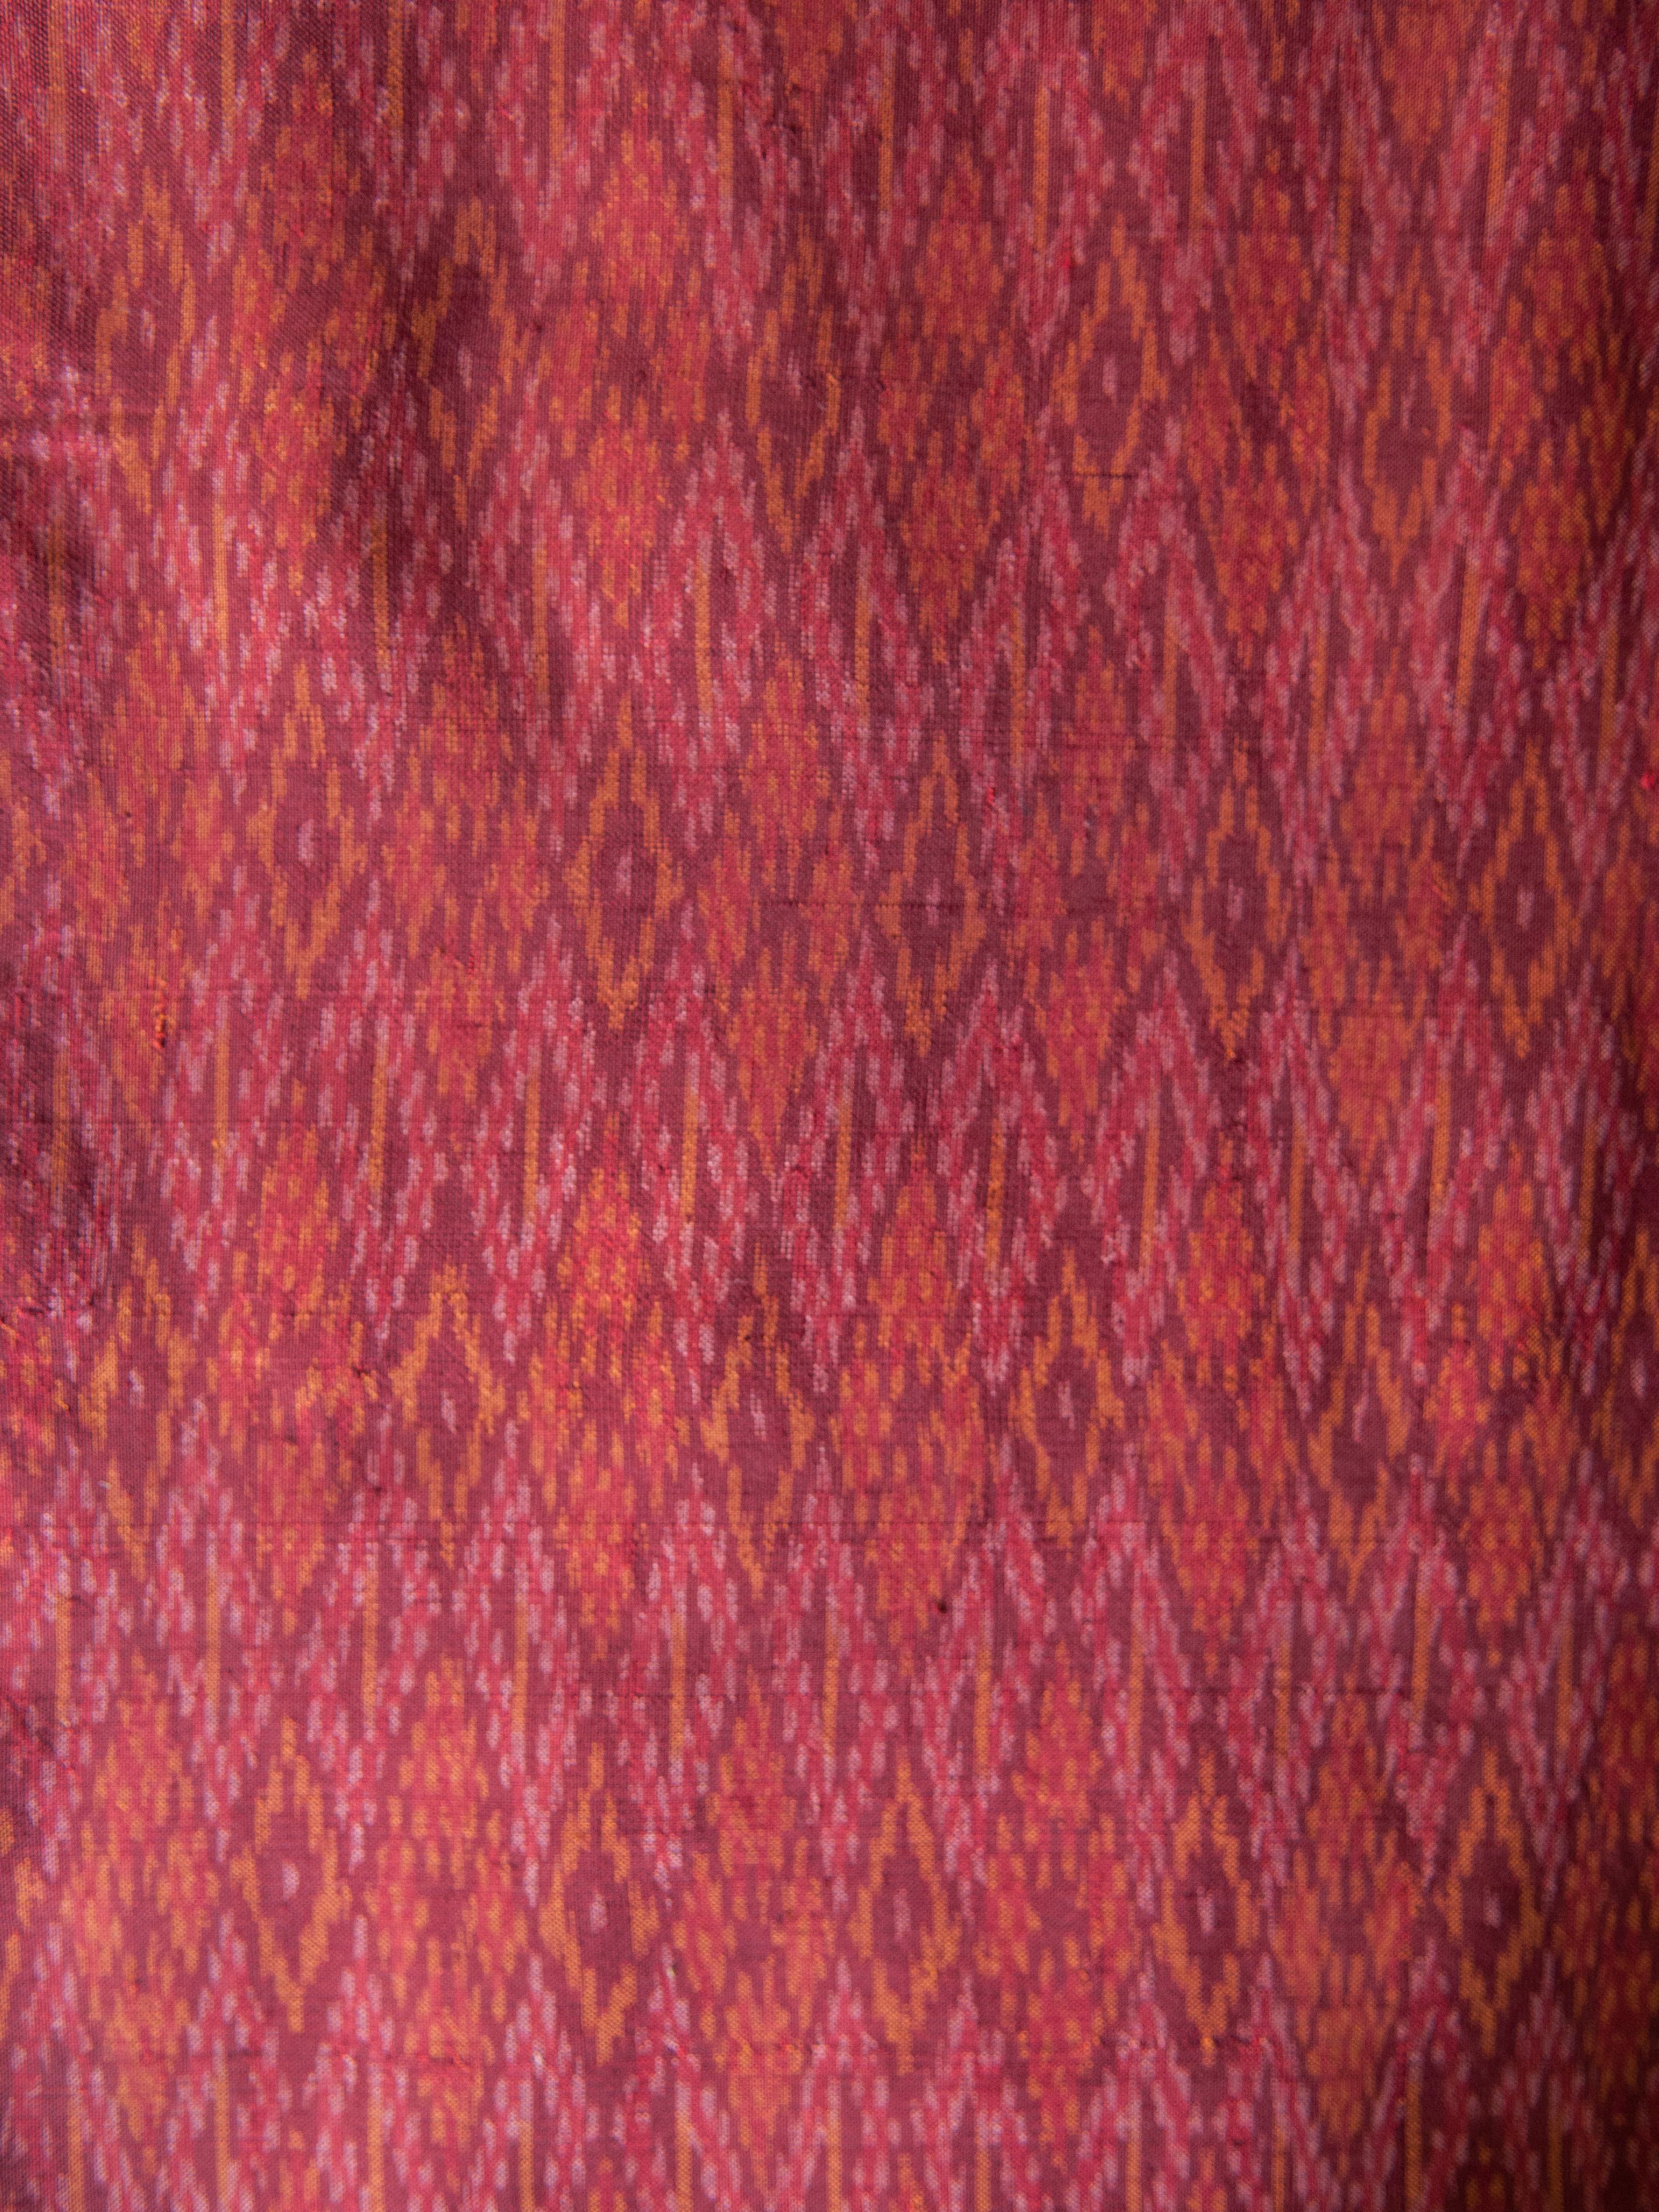 cambodian sarong fabric